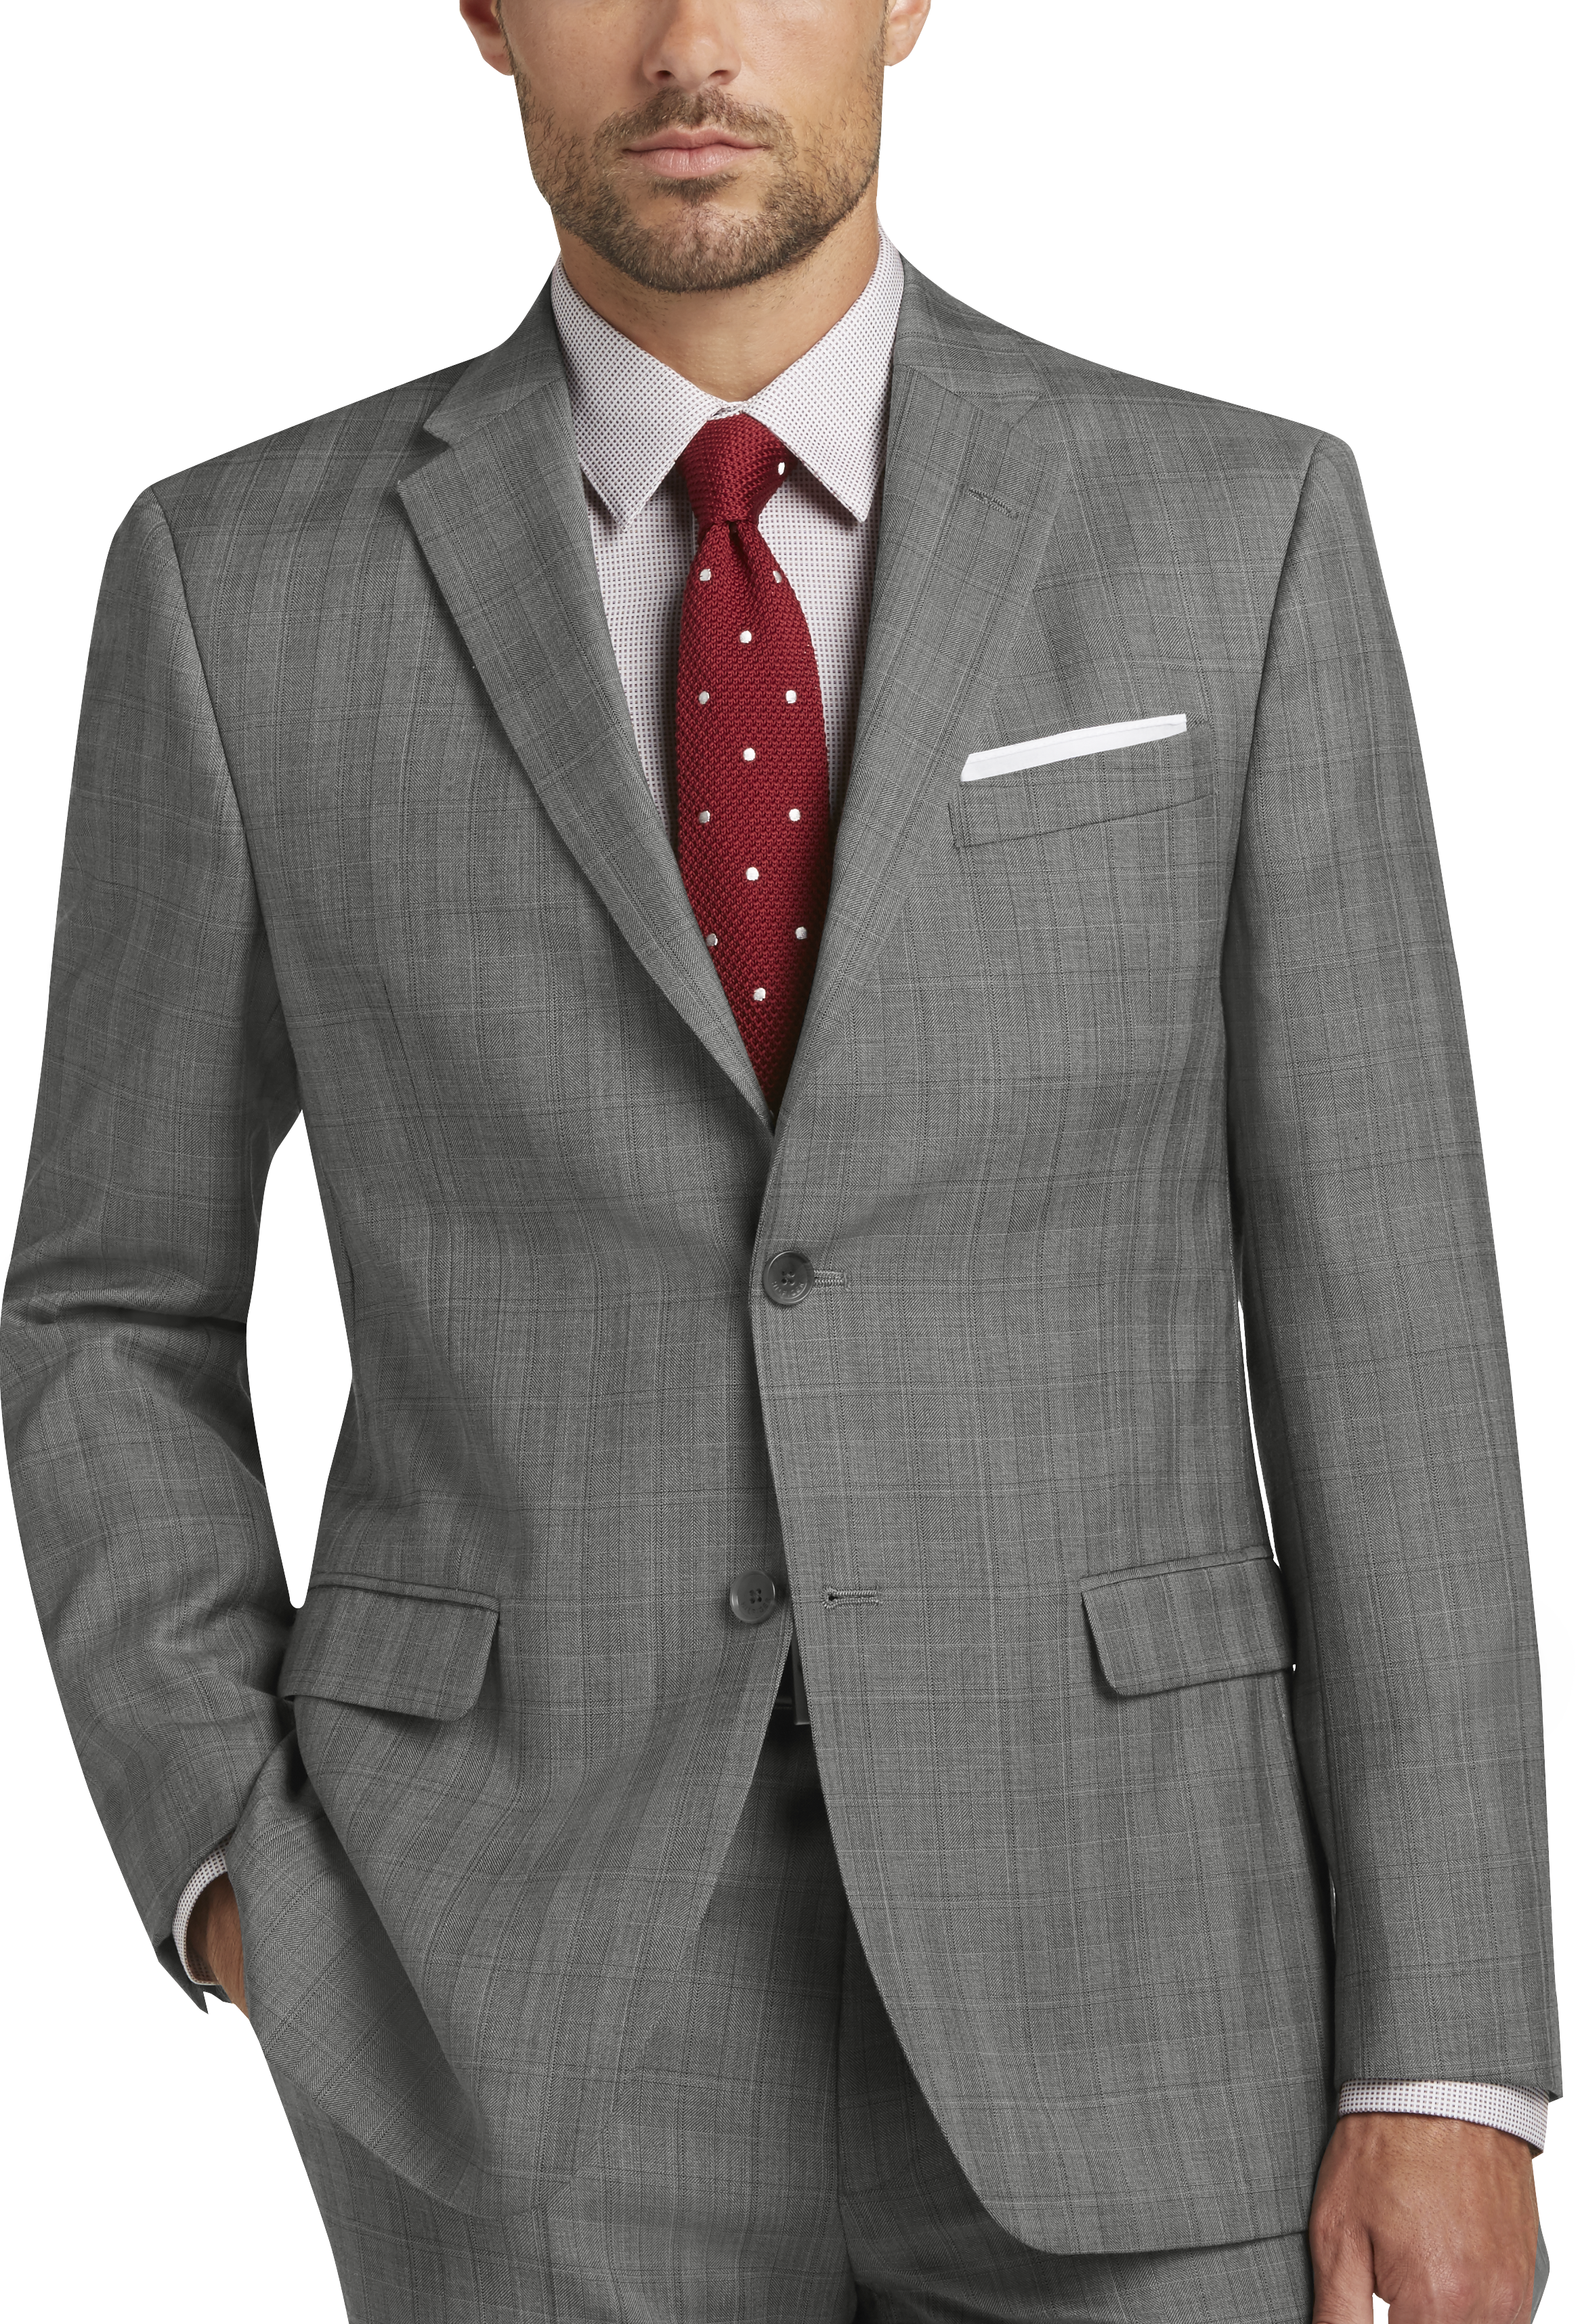 Tommy Hilfiger Gray Plaid Slim Fit Suit - Men's Sale | Men's Wearhouse